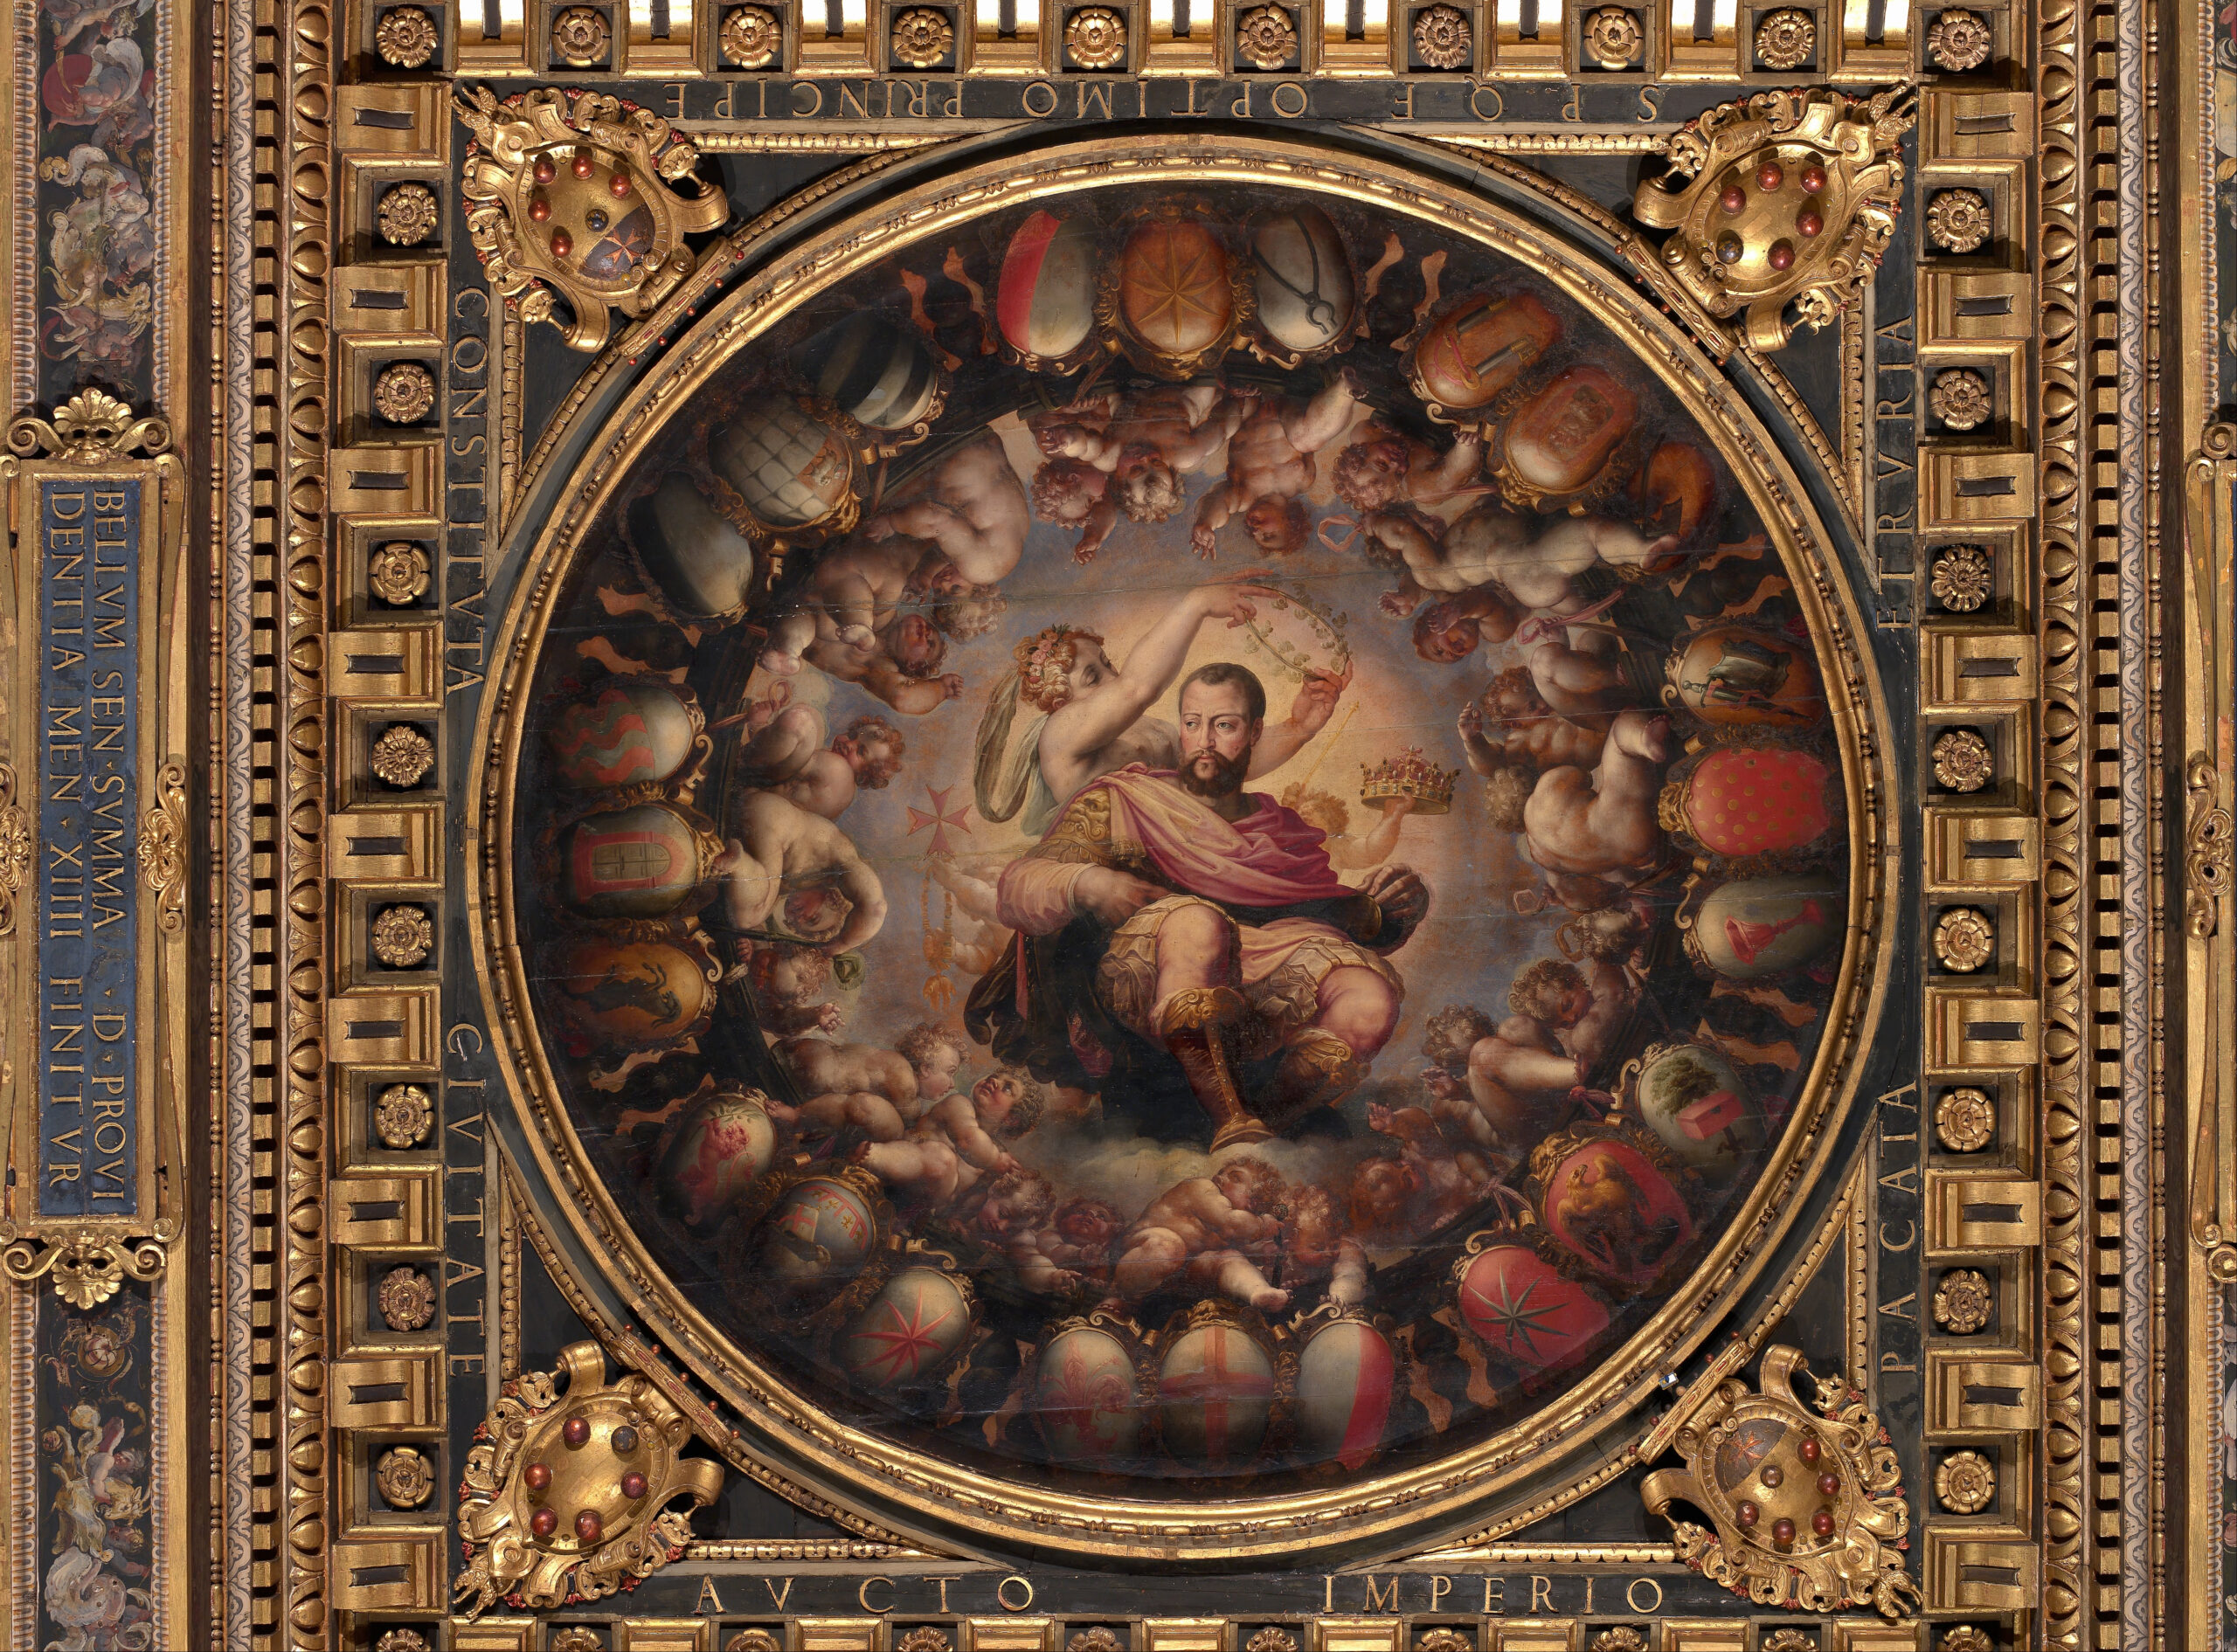 El arte como propaganda política: Cosme I de Medici y “Il Salone dei Cinquecento” del Palazzo Vecchio